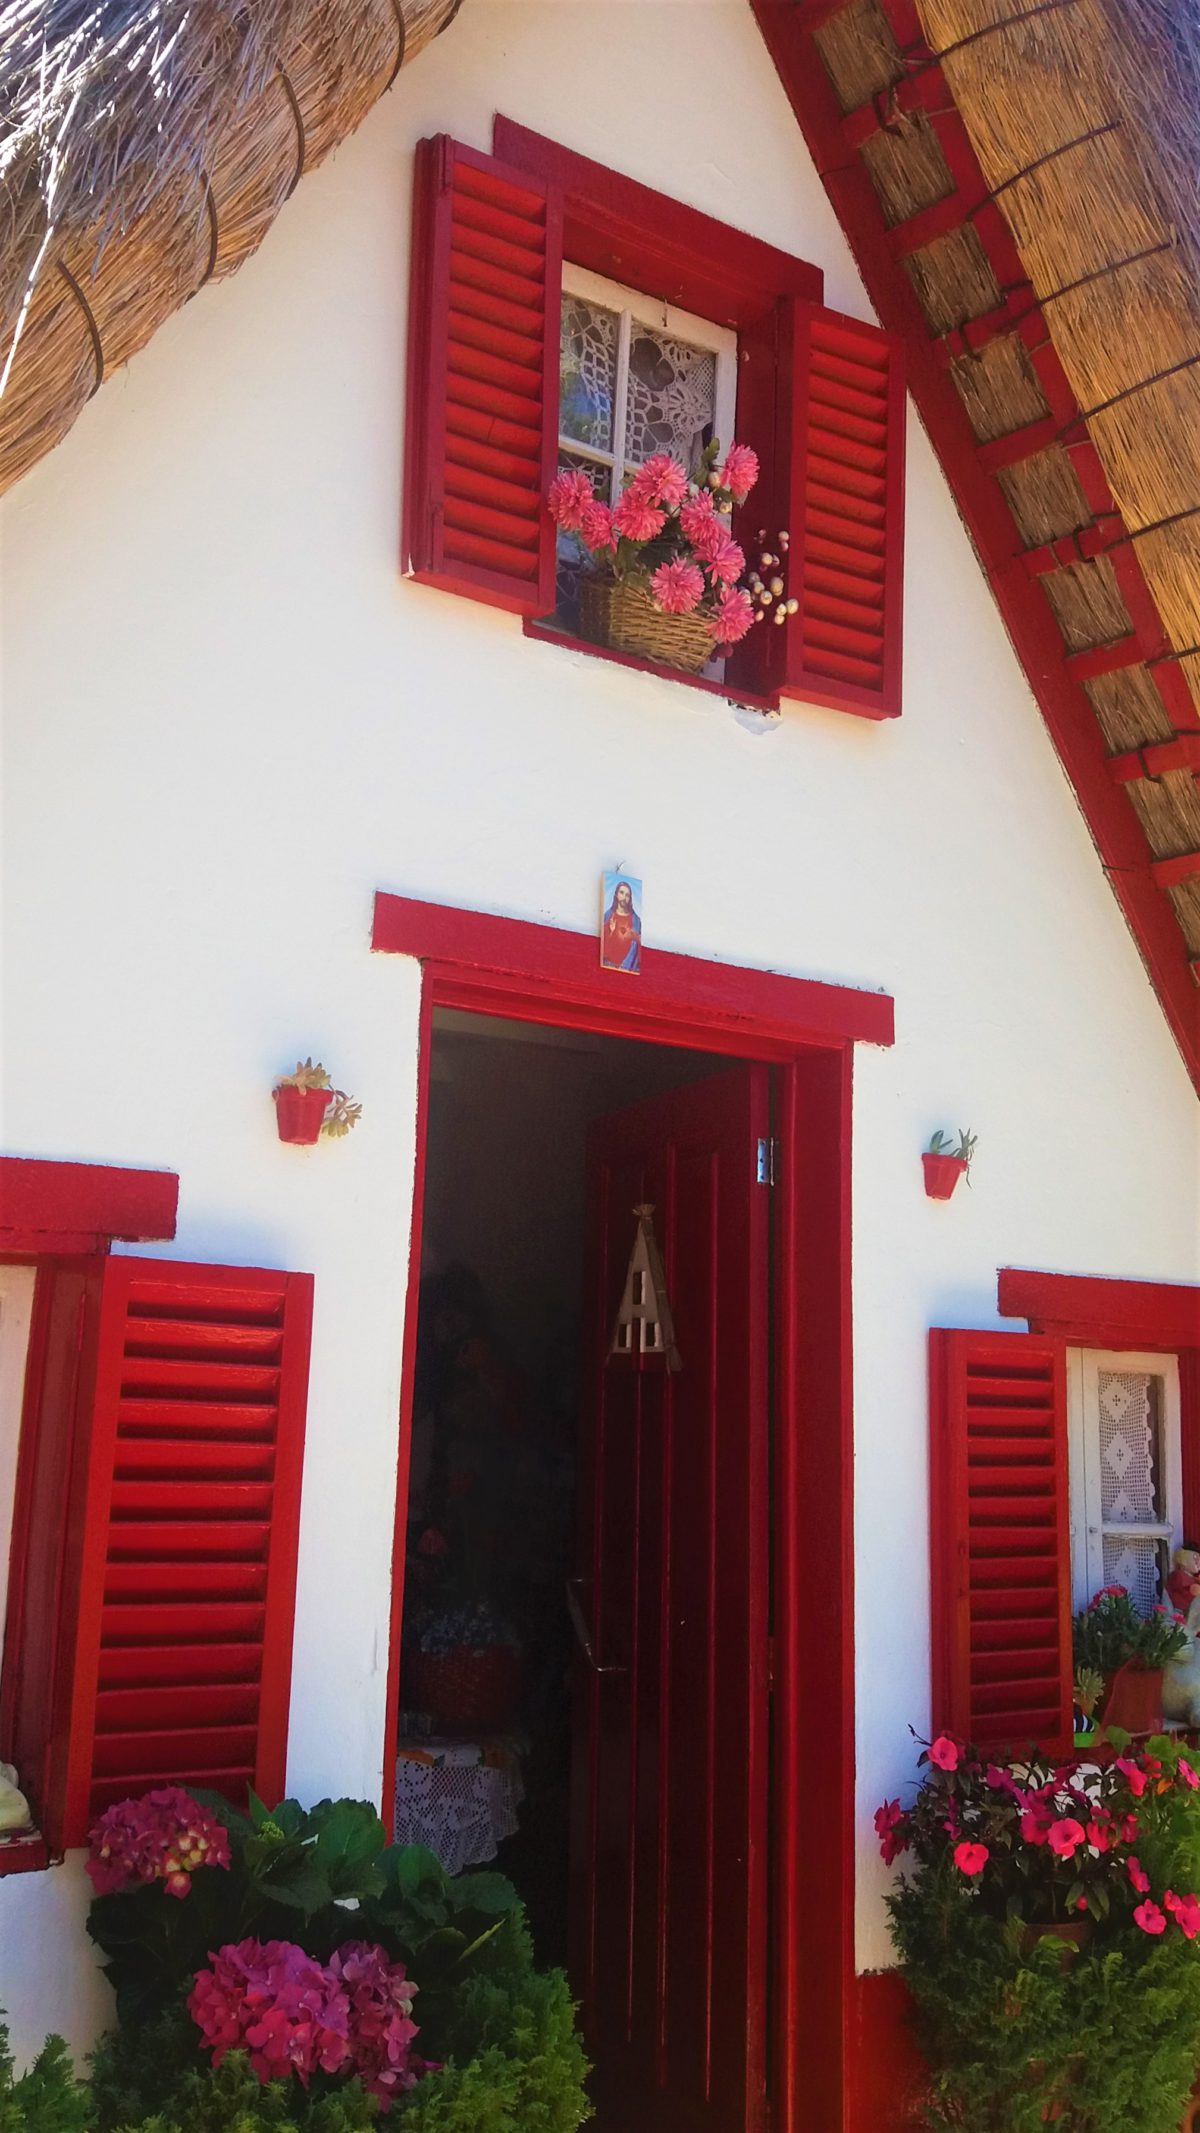 Czerwone okiennice dodają uroku malownicznym domkom